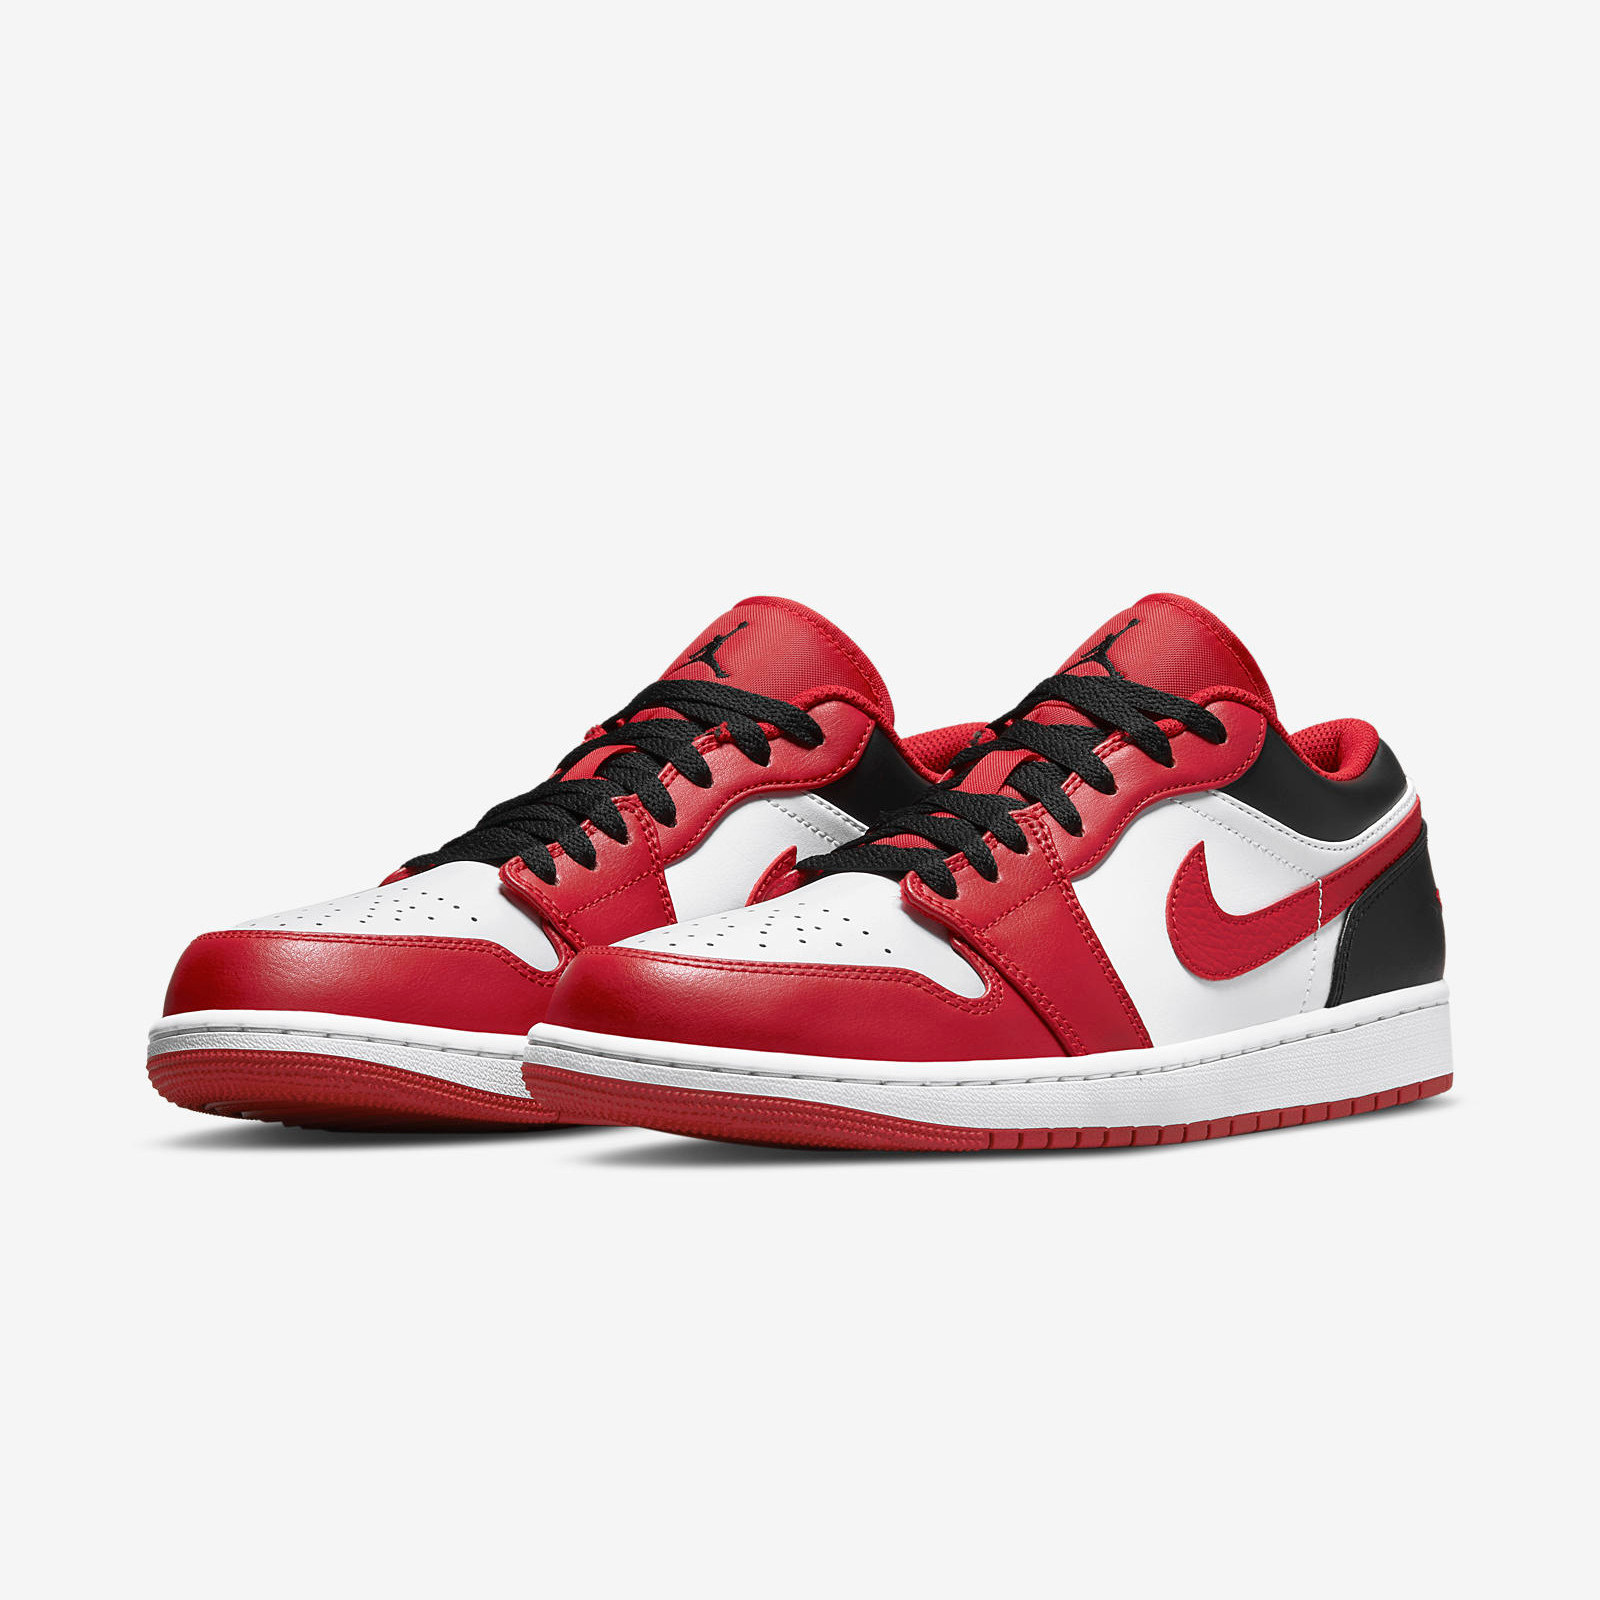 Air Jordan 1 Low
« Gym Red »